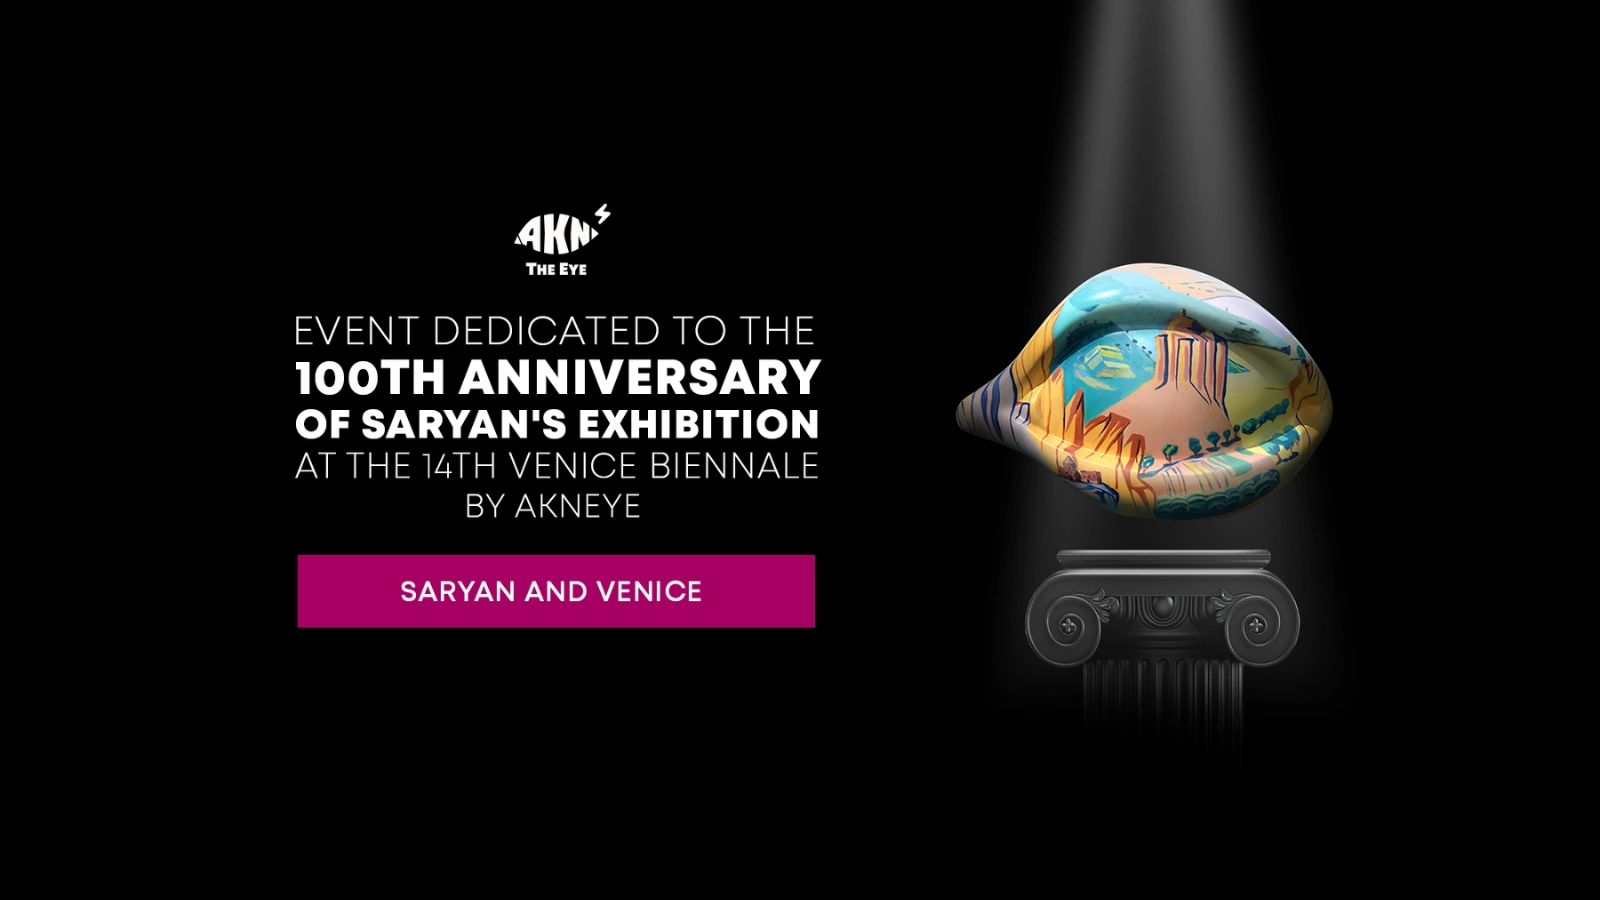 В AKNEYE Phygital Space состоялось мероприятие, посвященное ко дню первого участия Армении на международной выставке Венецианской Биеннале - одной из самых известных форумов мирового искусства.